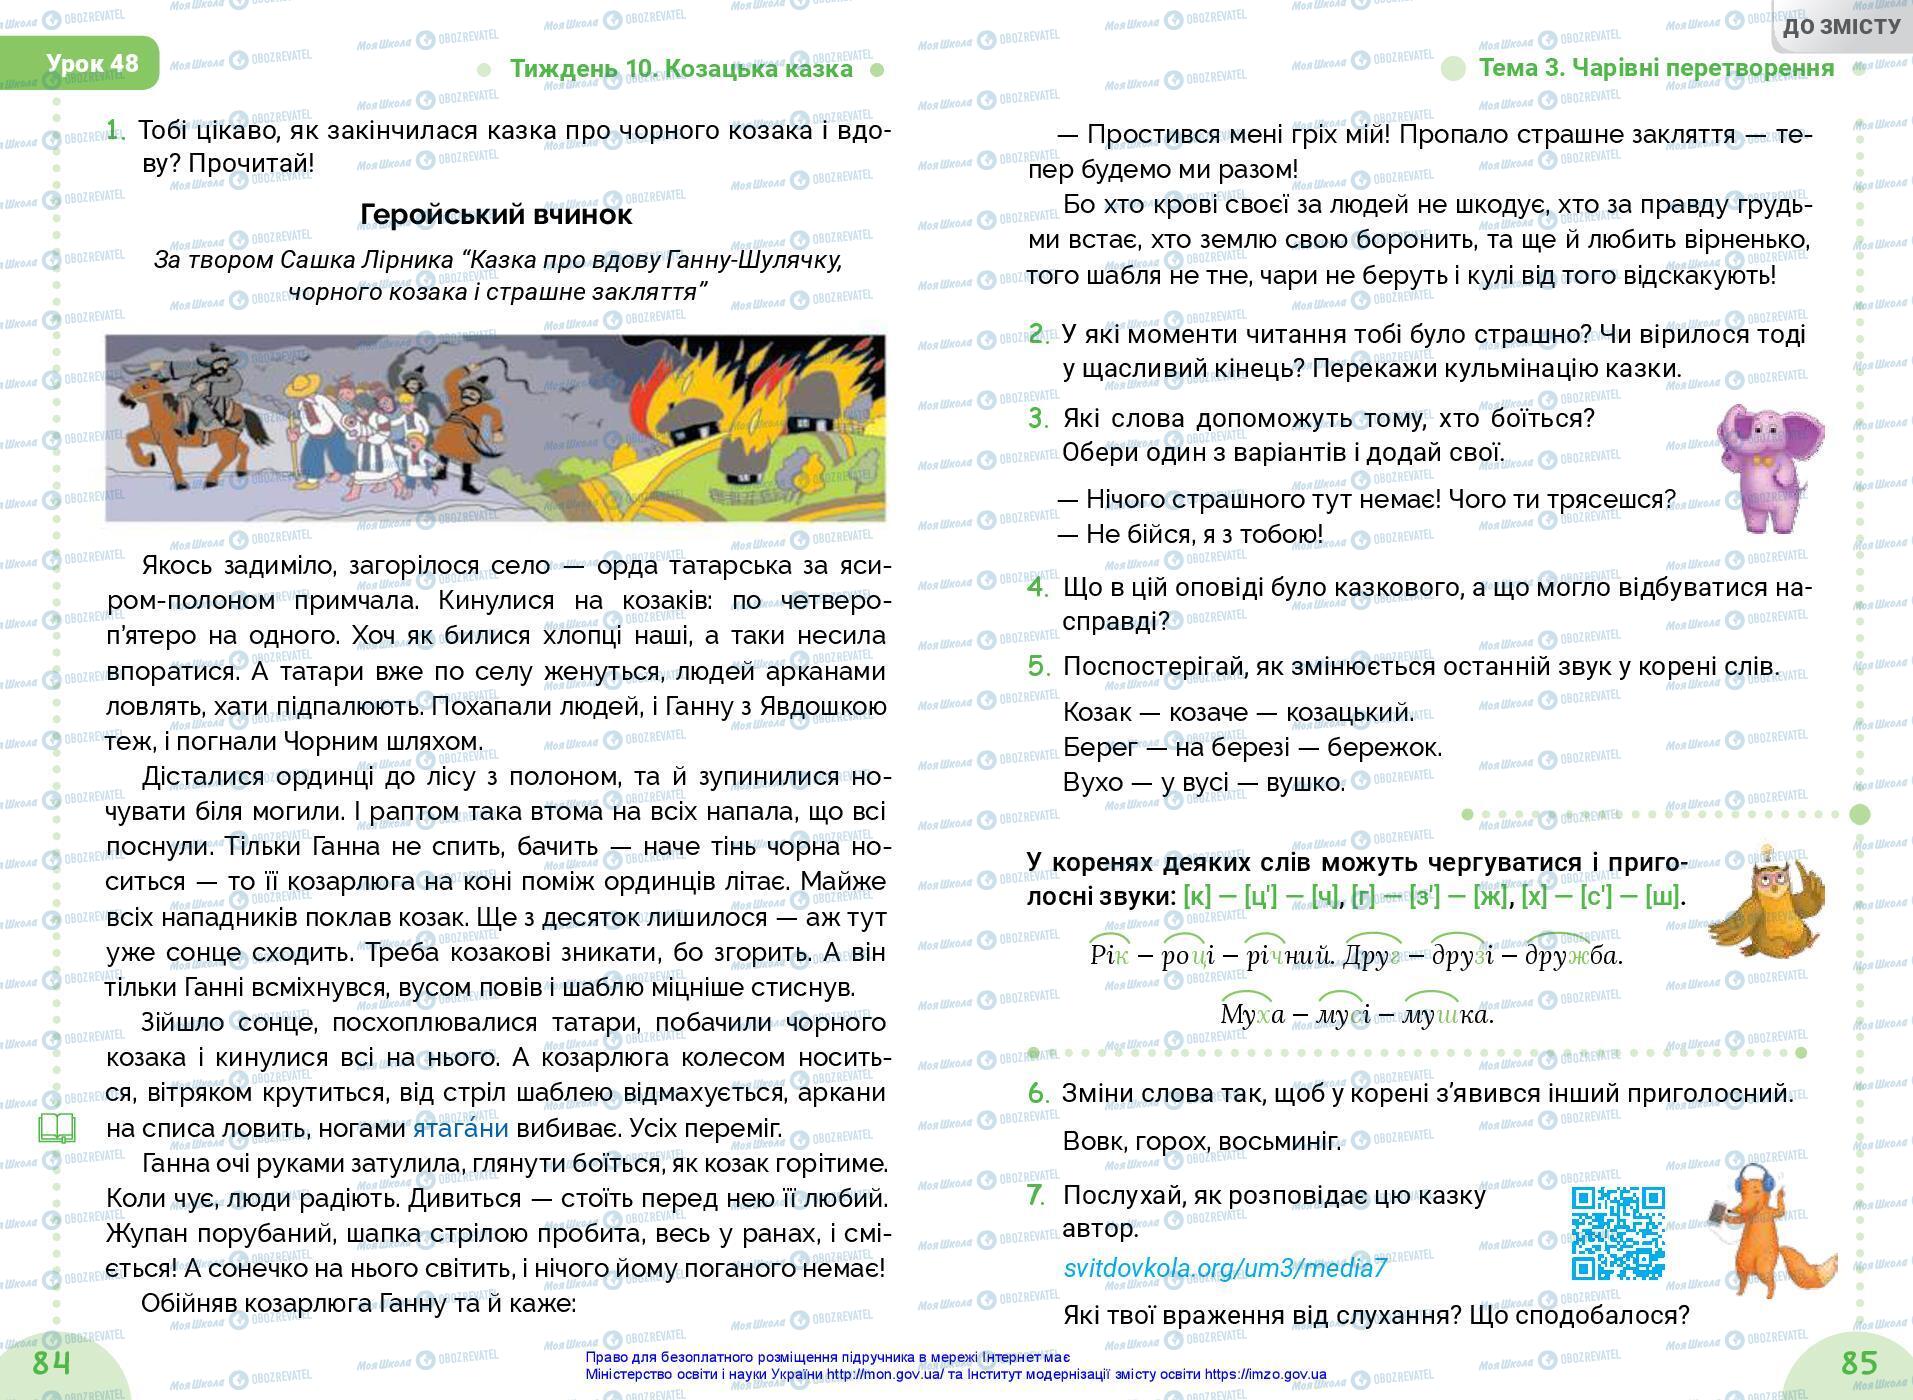 Підручники Українська мова 3 клас сторінка 84-85